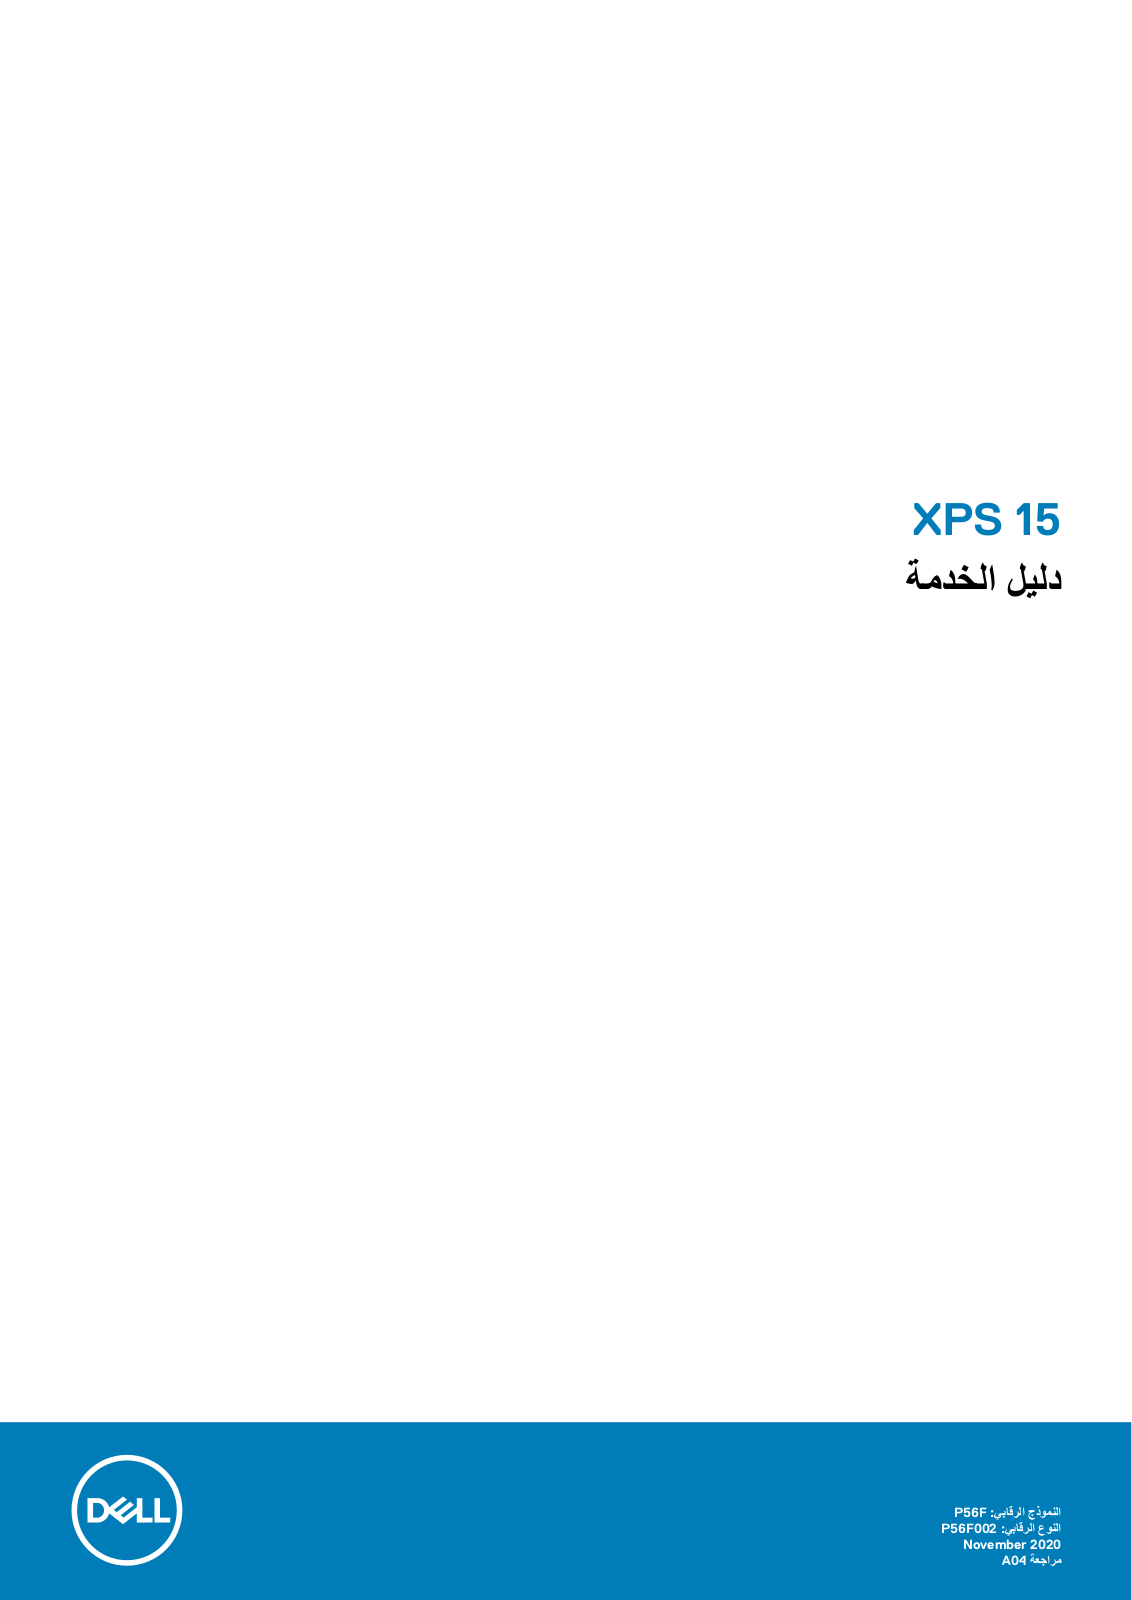 Dell XPS 15 9570 Manual